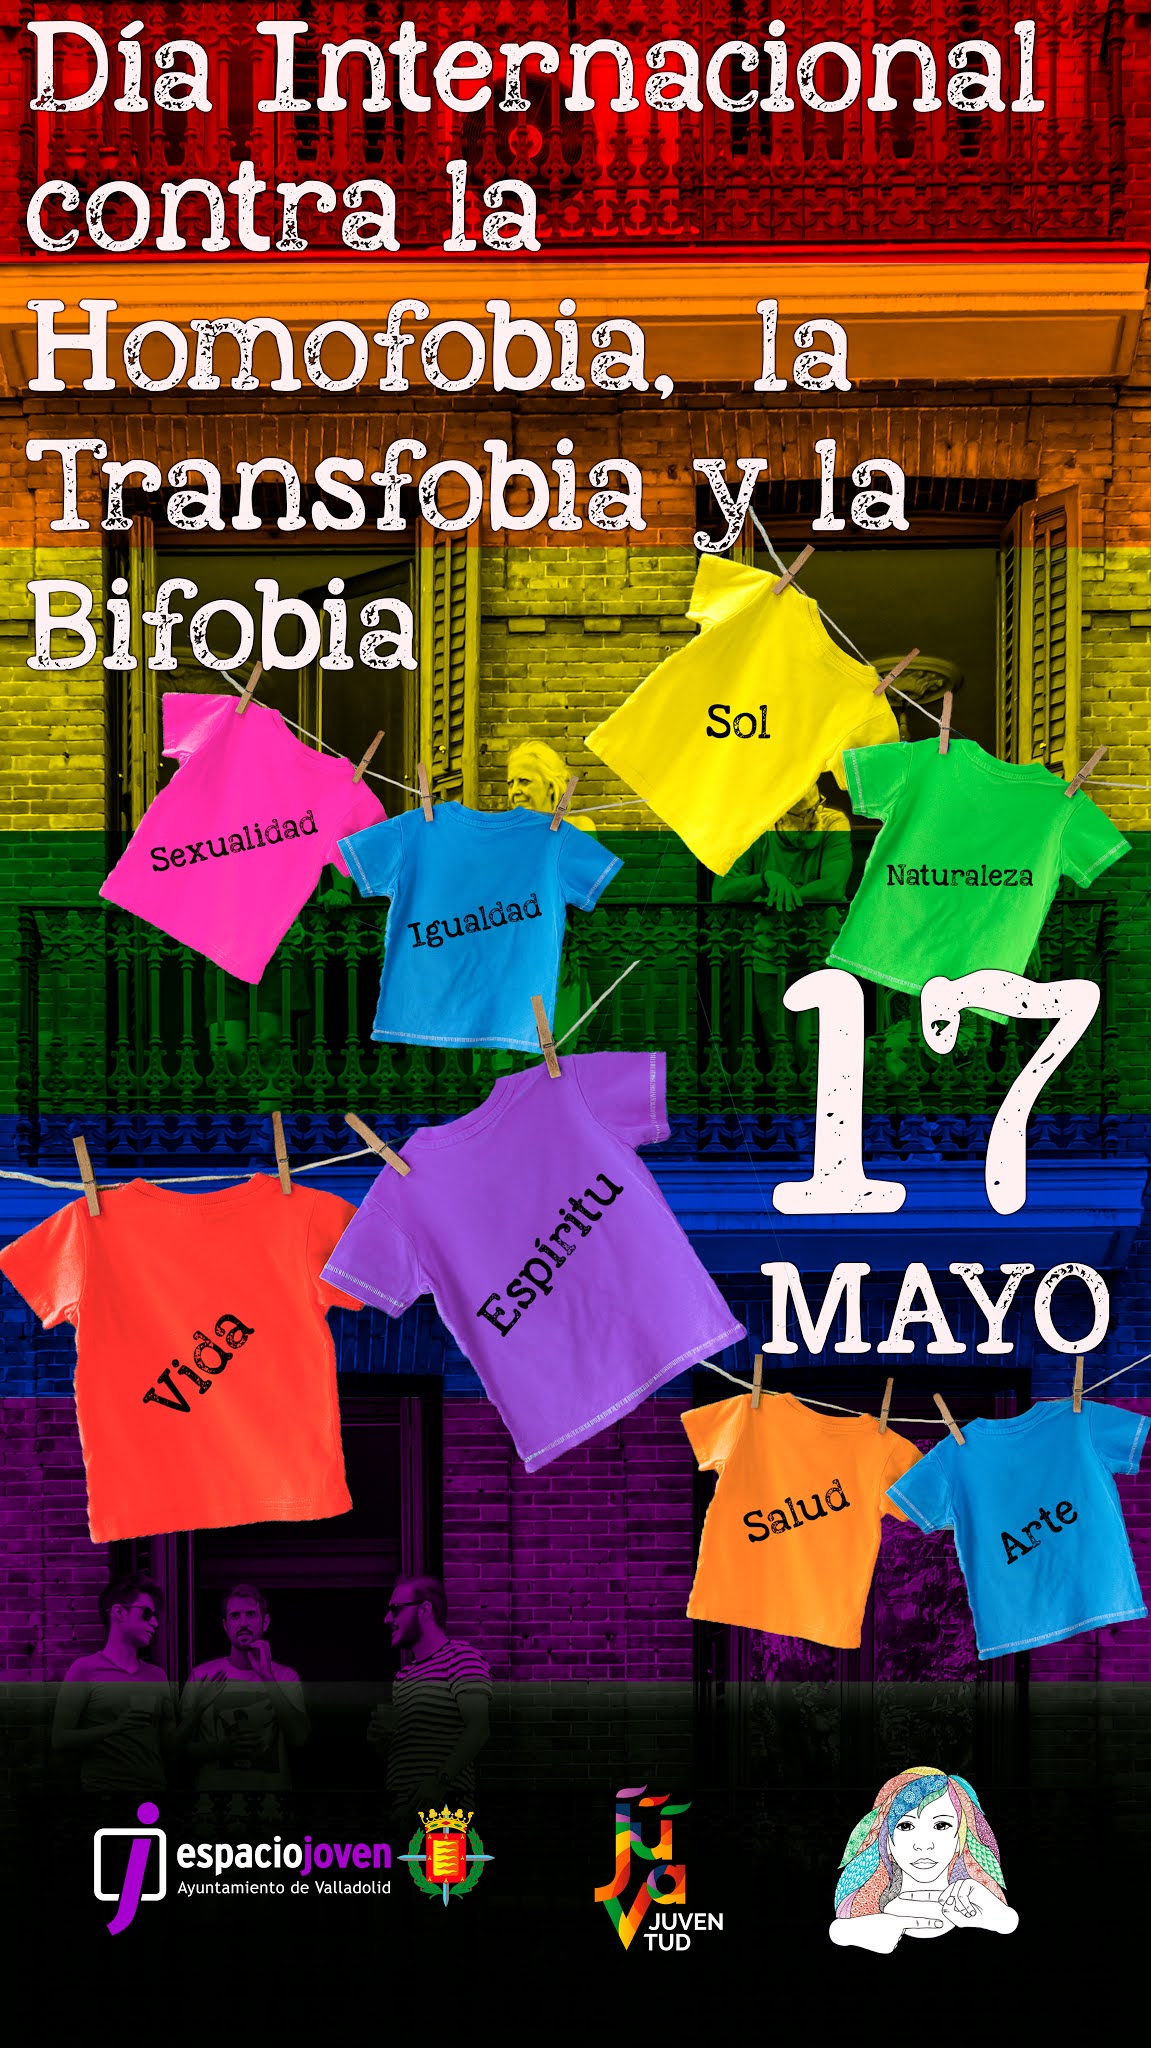 17 de Mayo. Día Internacional Contra la Homofobia, Transfobia y Bifobia.